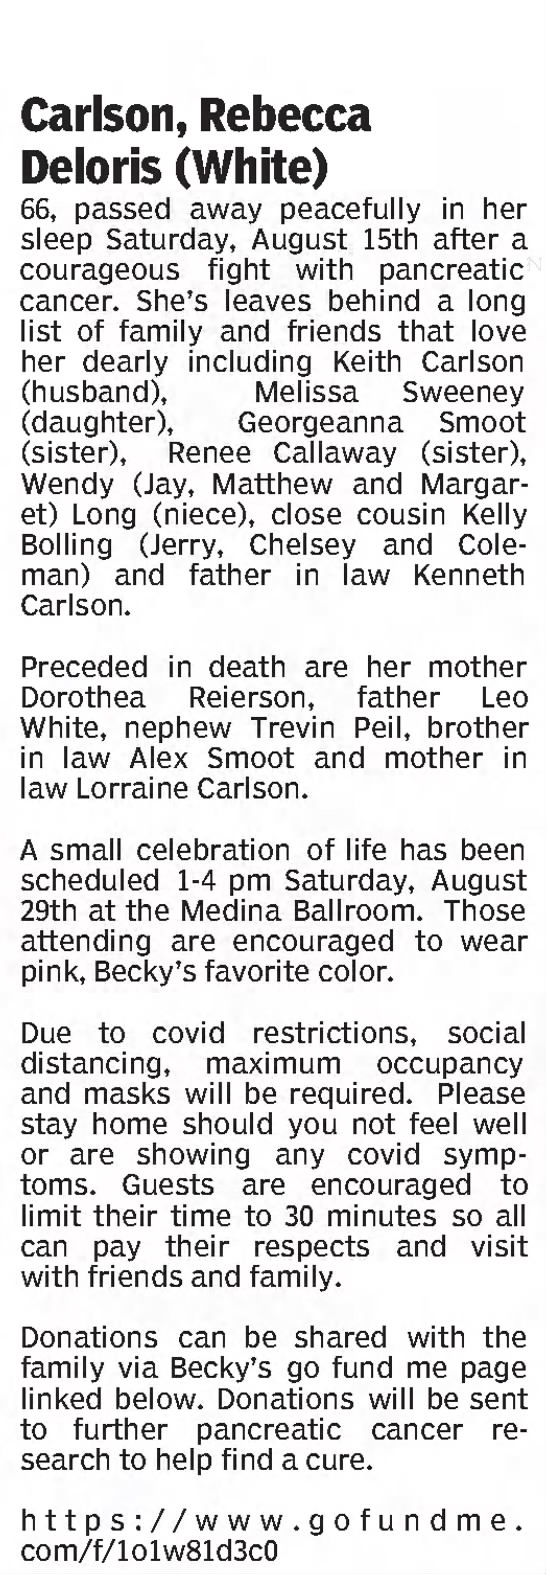 Obituary for Rebecca Deloris Carlson (Aged 66) - 